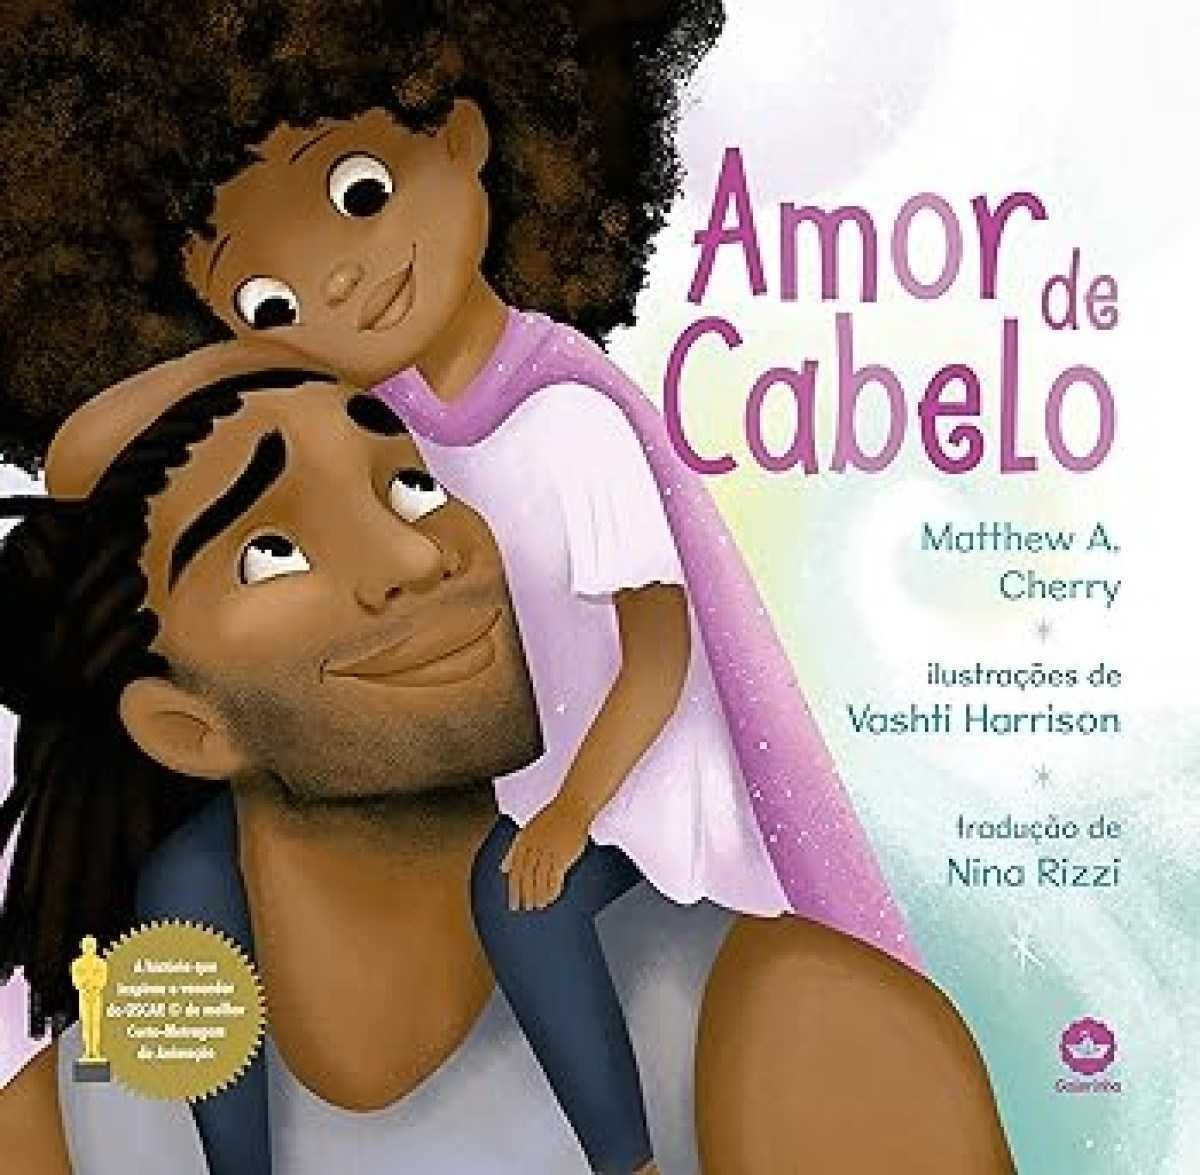 Negritude literária: sete livros para introduzir na infância